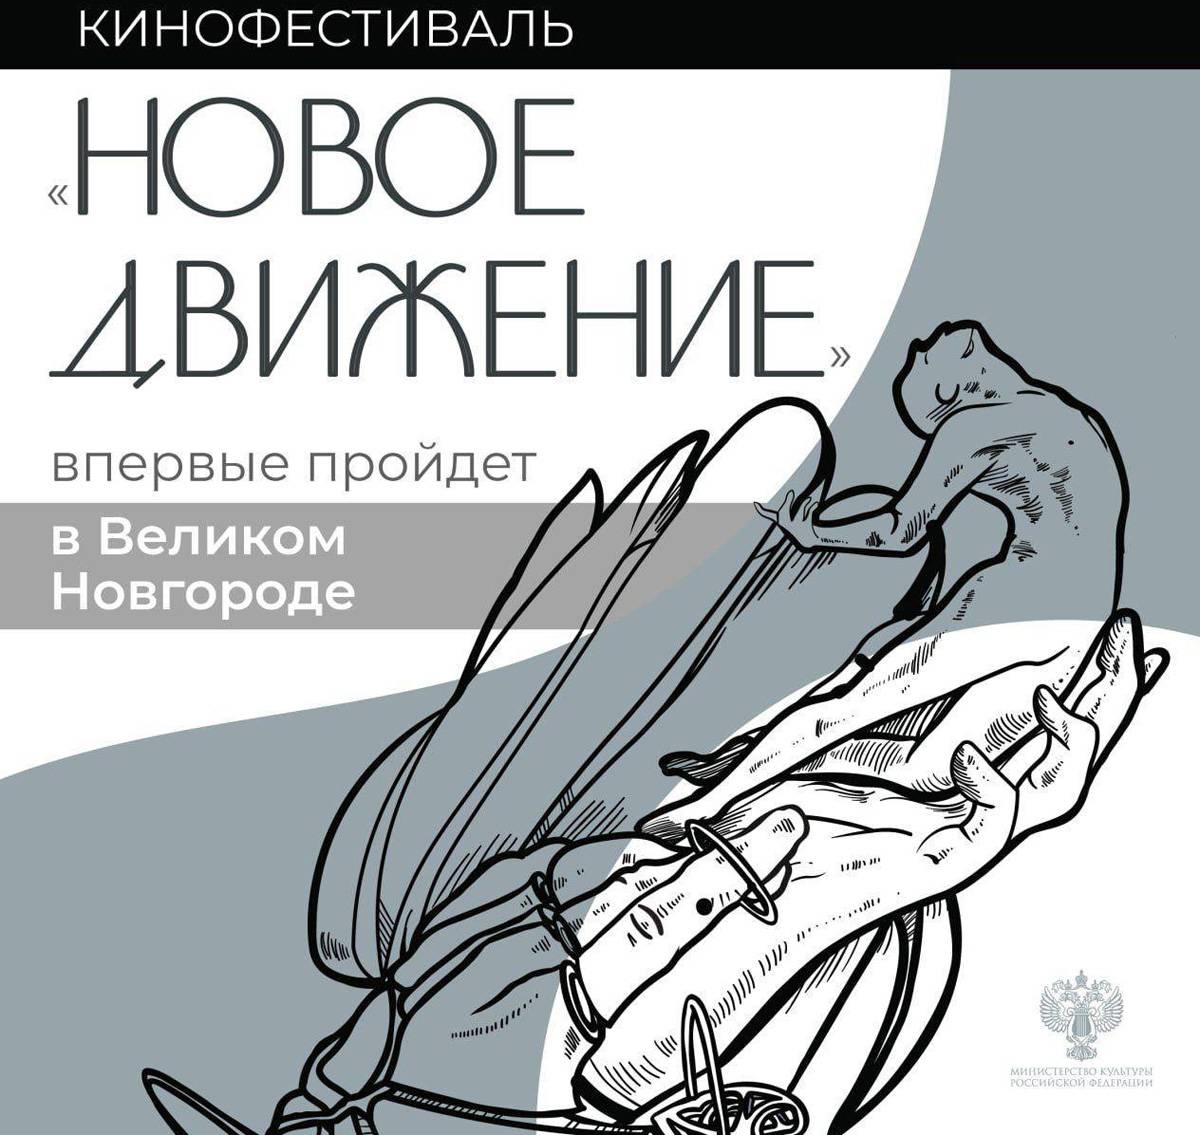 Фестиваль пройдёт при поддержке министерства культуры Российской Федерации и правительства Новгородской области.